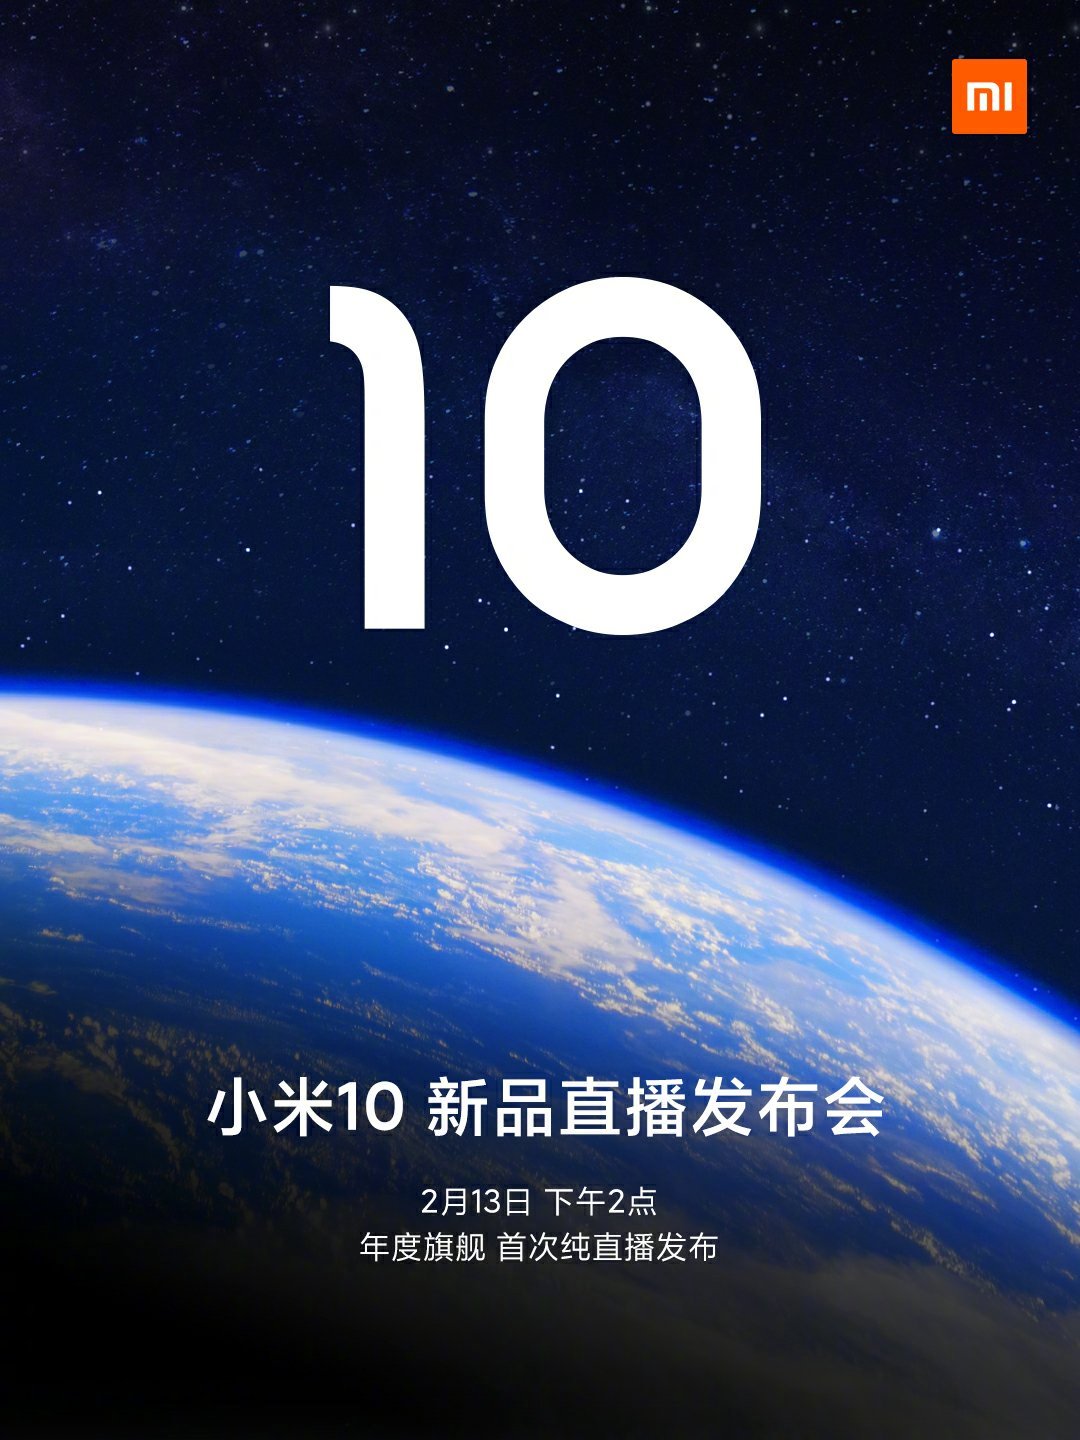 Xiaomi Mi 10 invitation